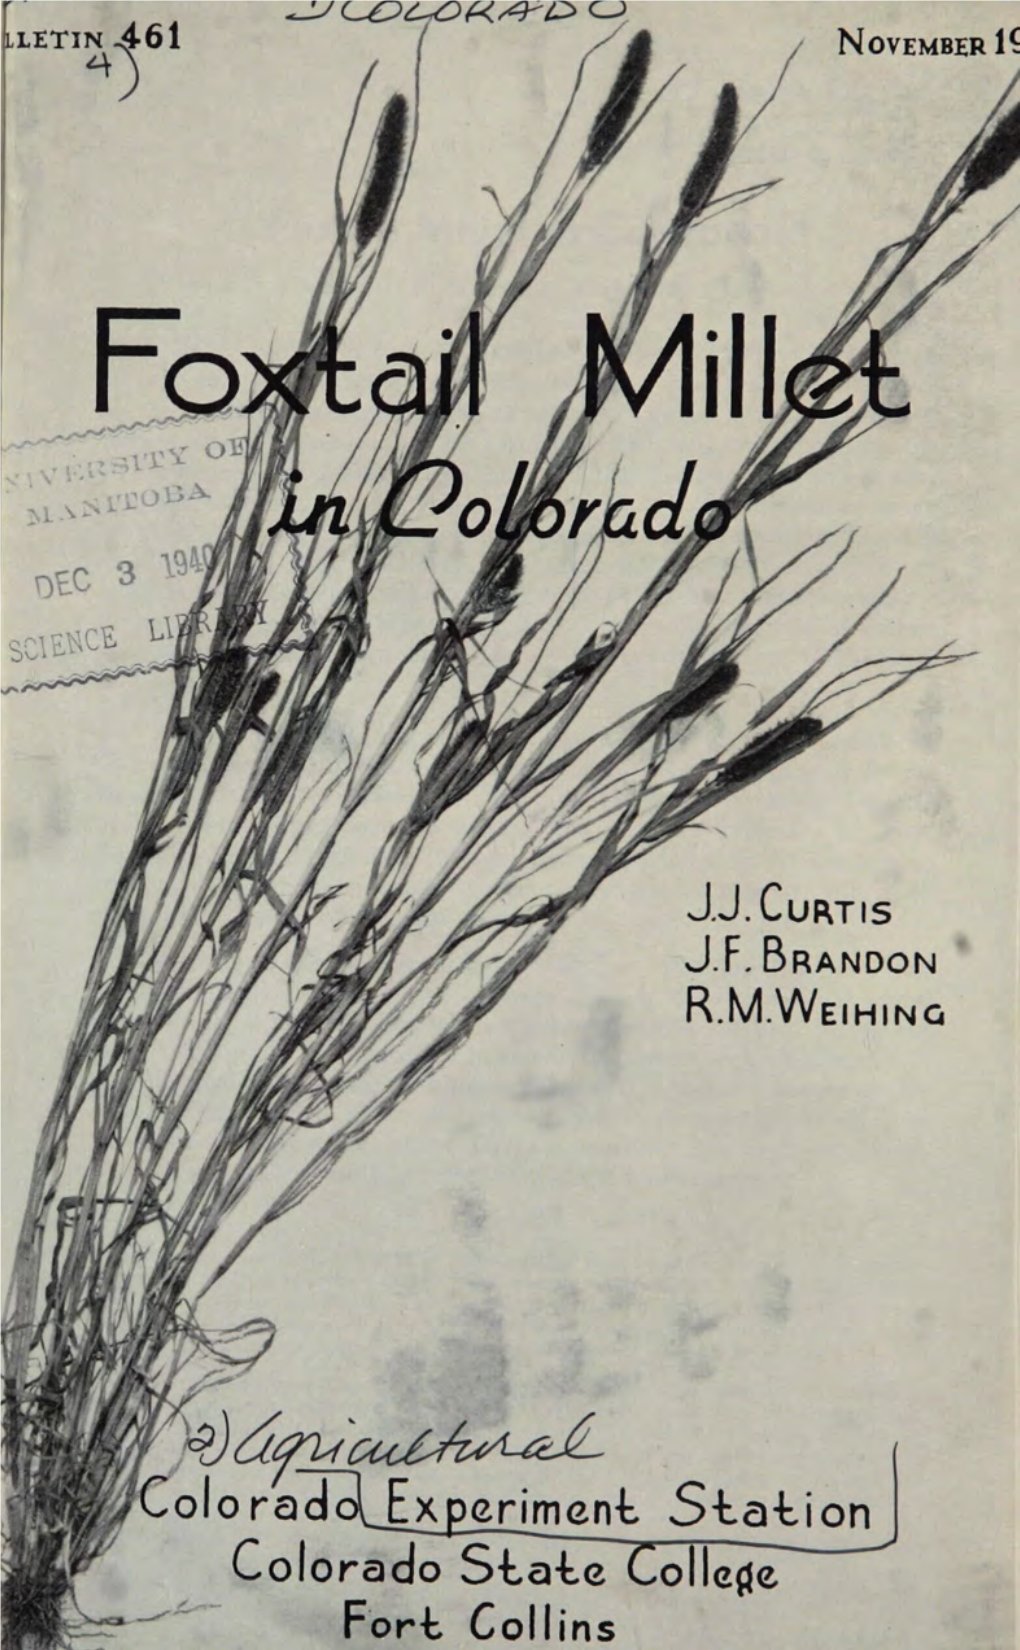 Foxtail Millet in Colorado